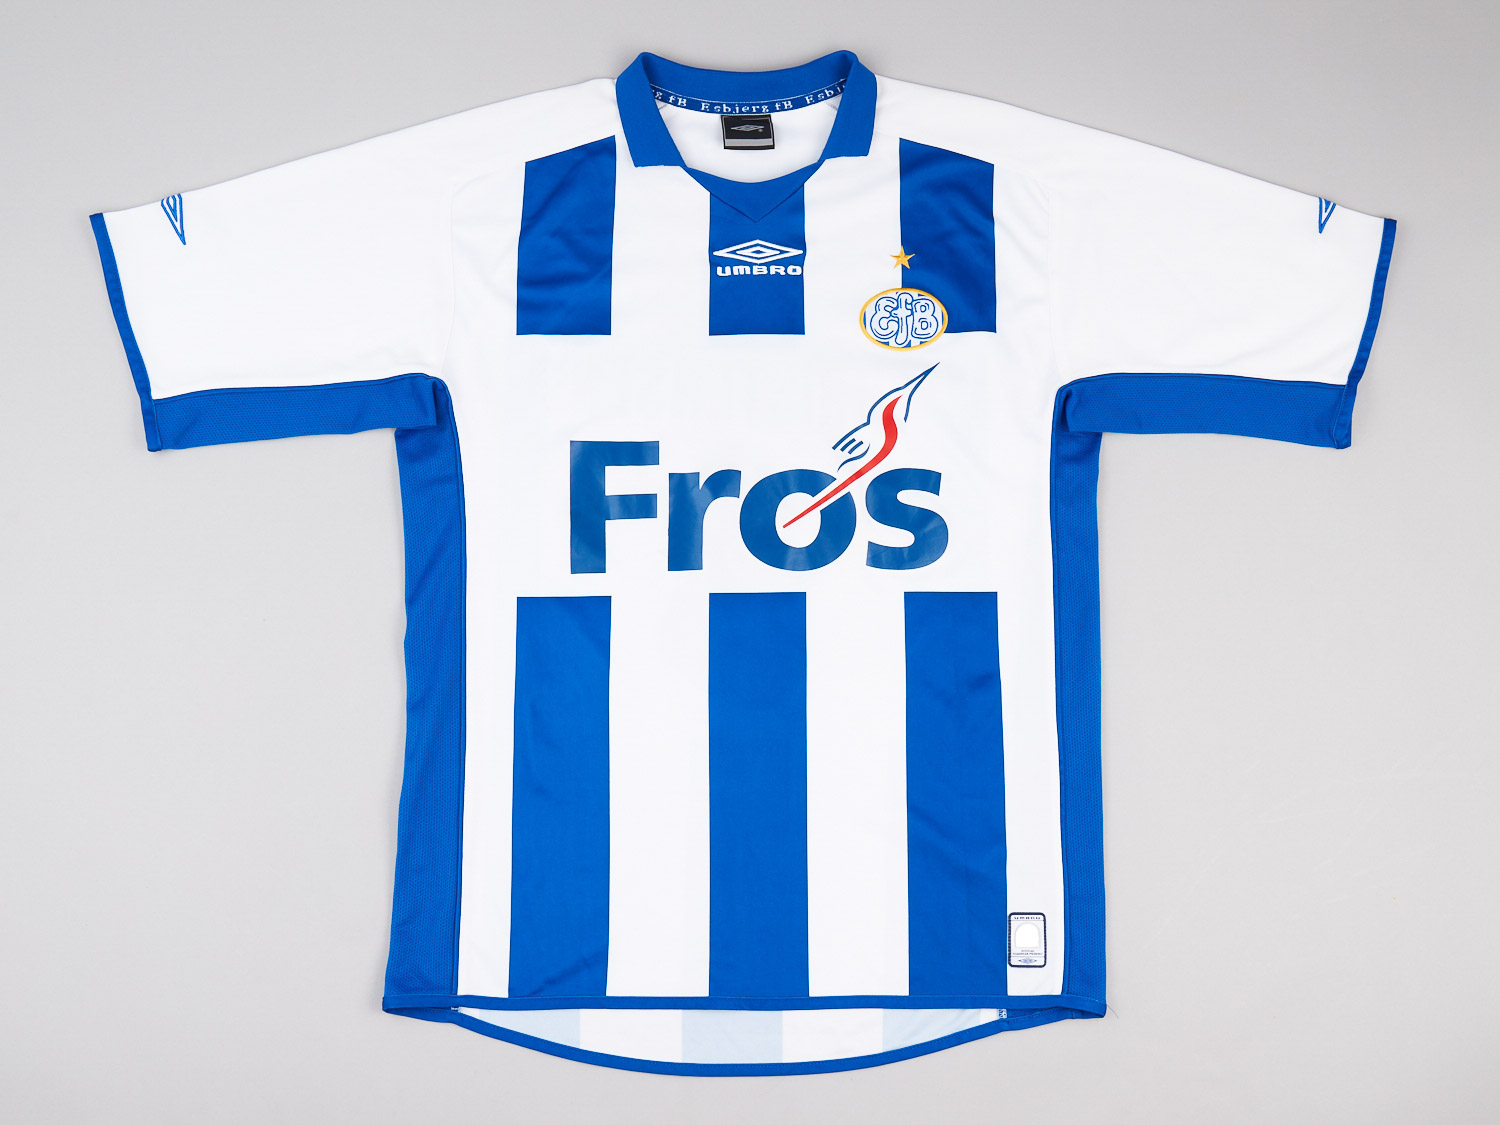 Esbjerg  home shirt (Original)